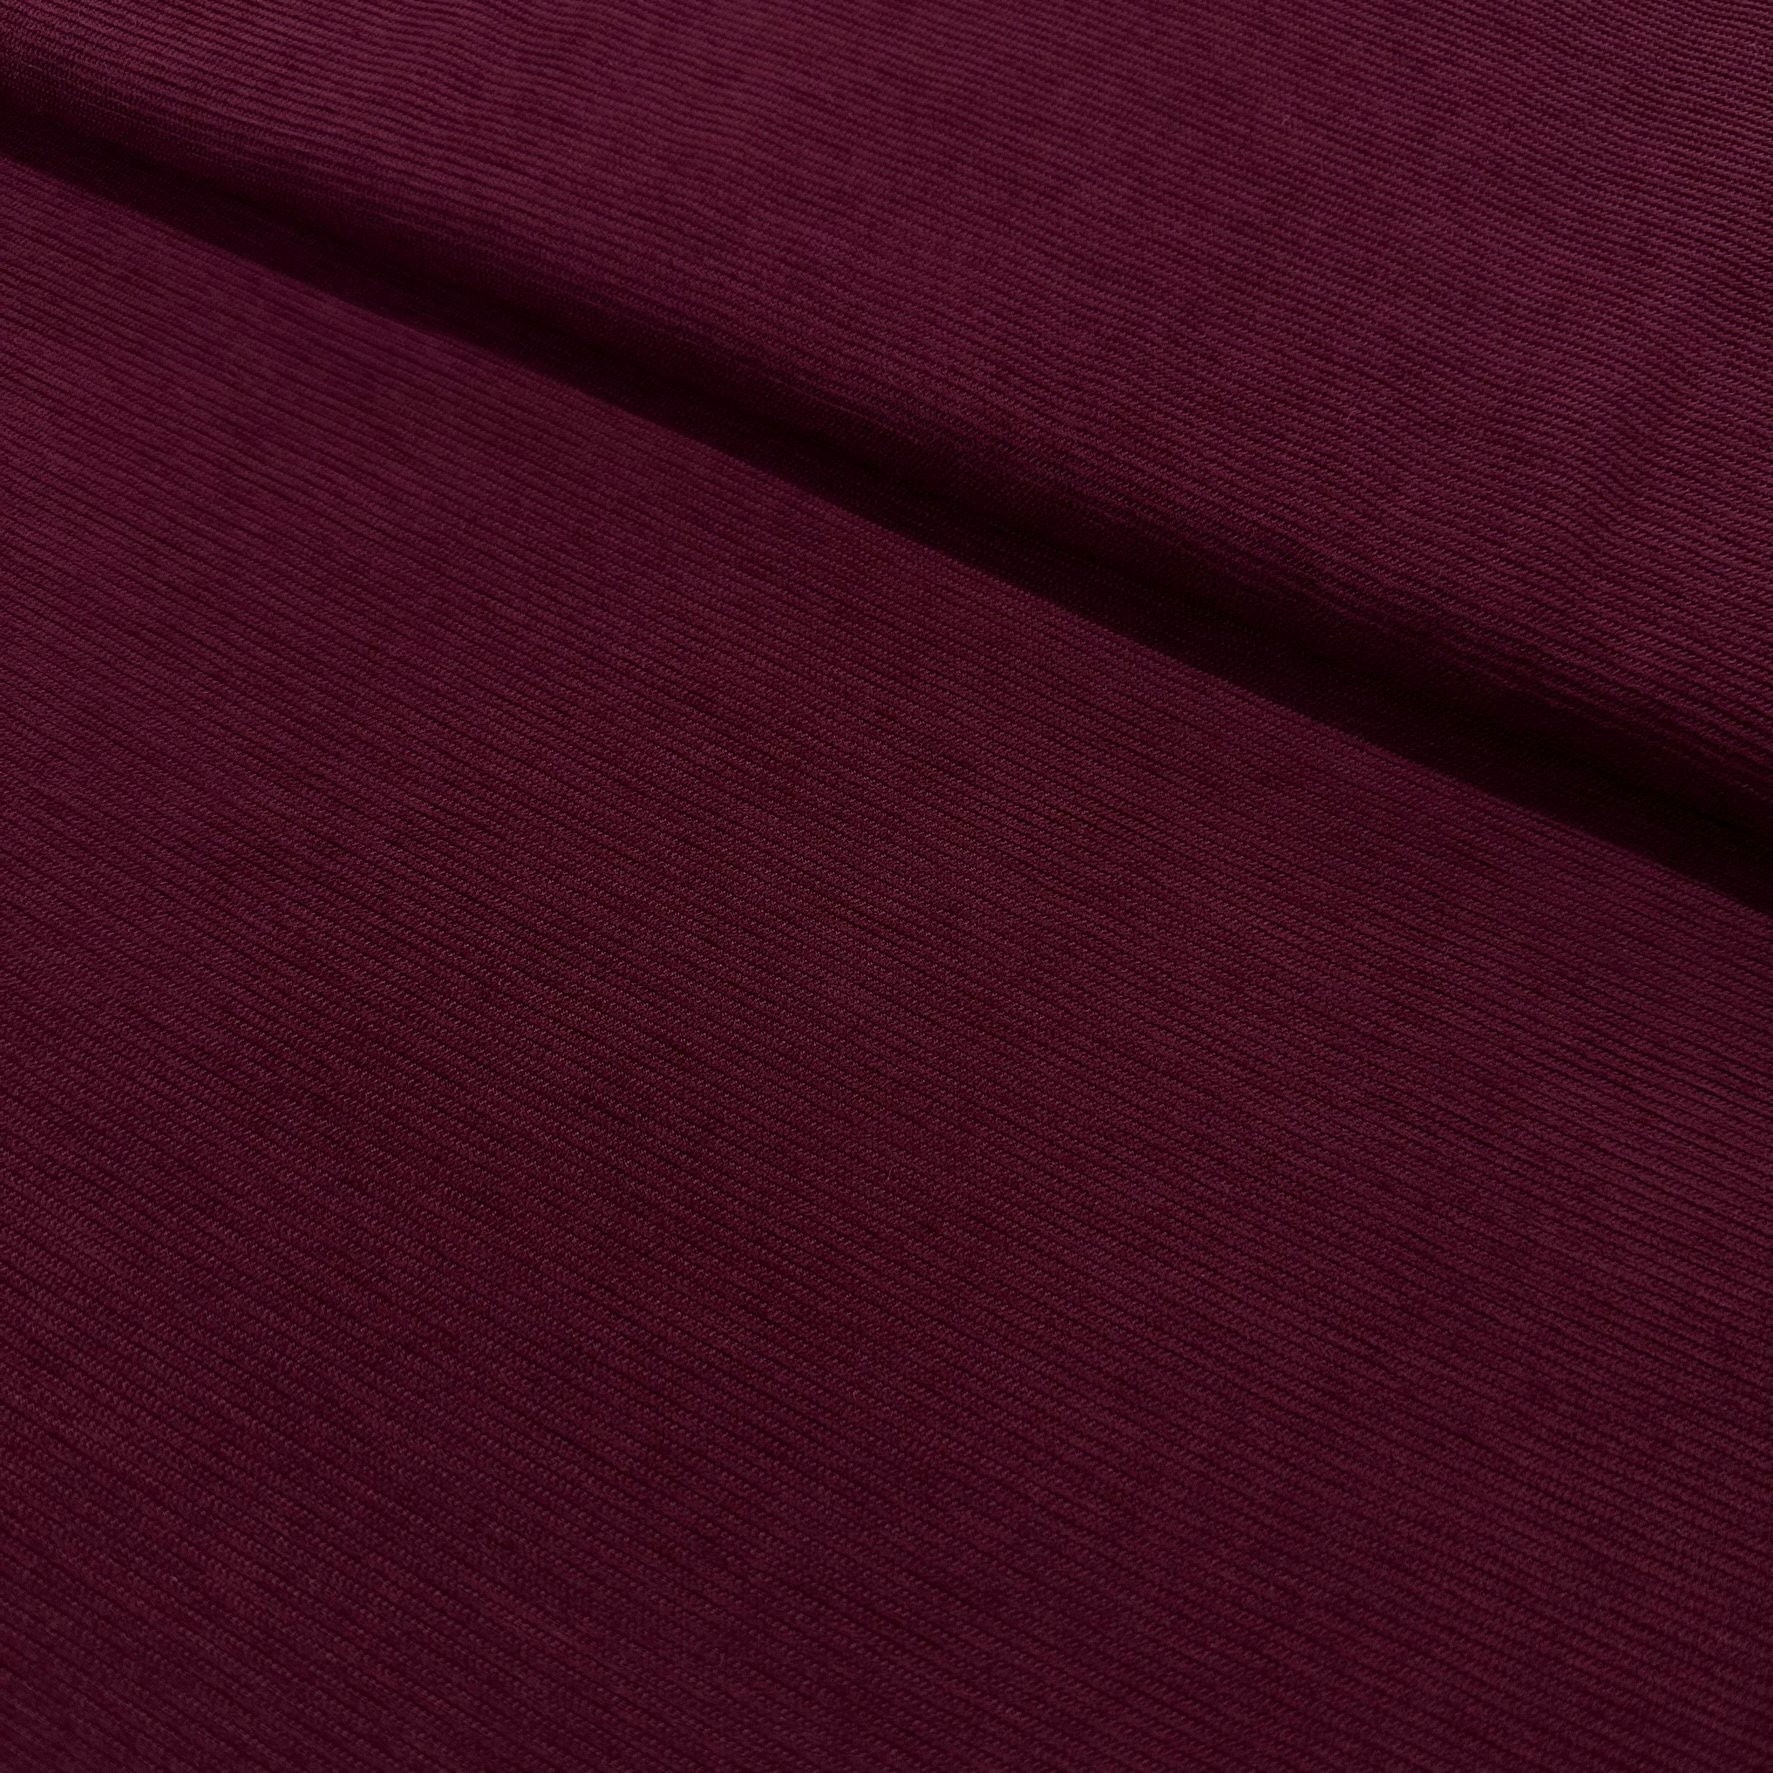 Plain Color Corduroy Fabric